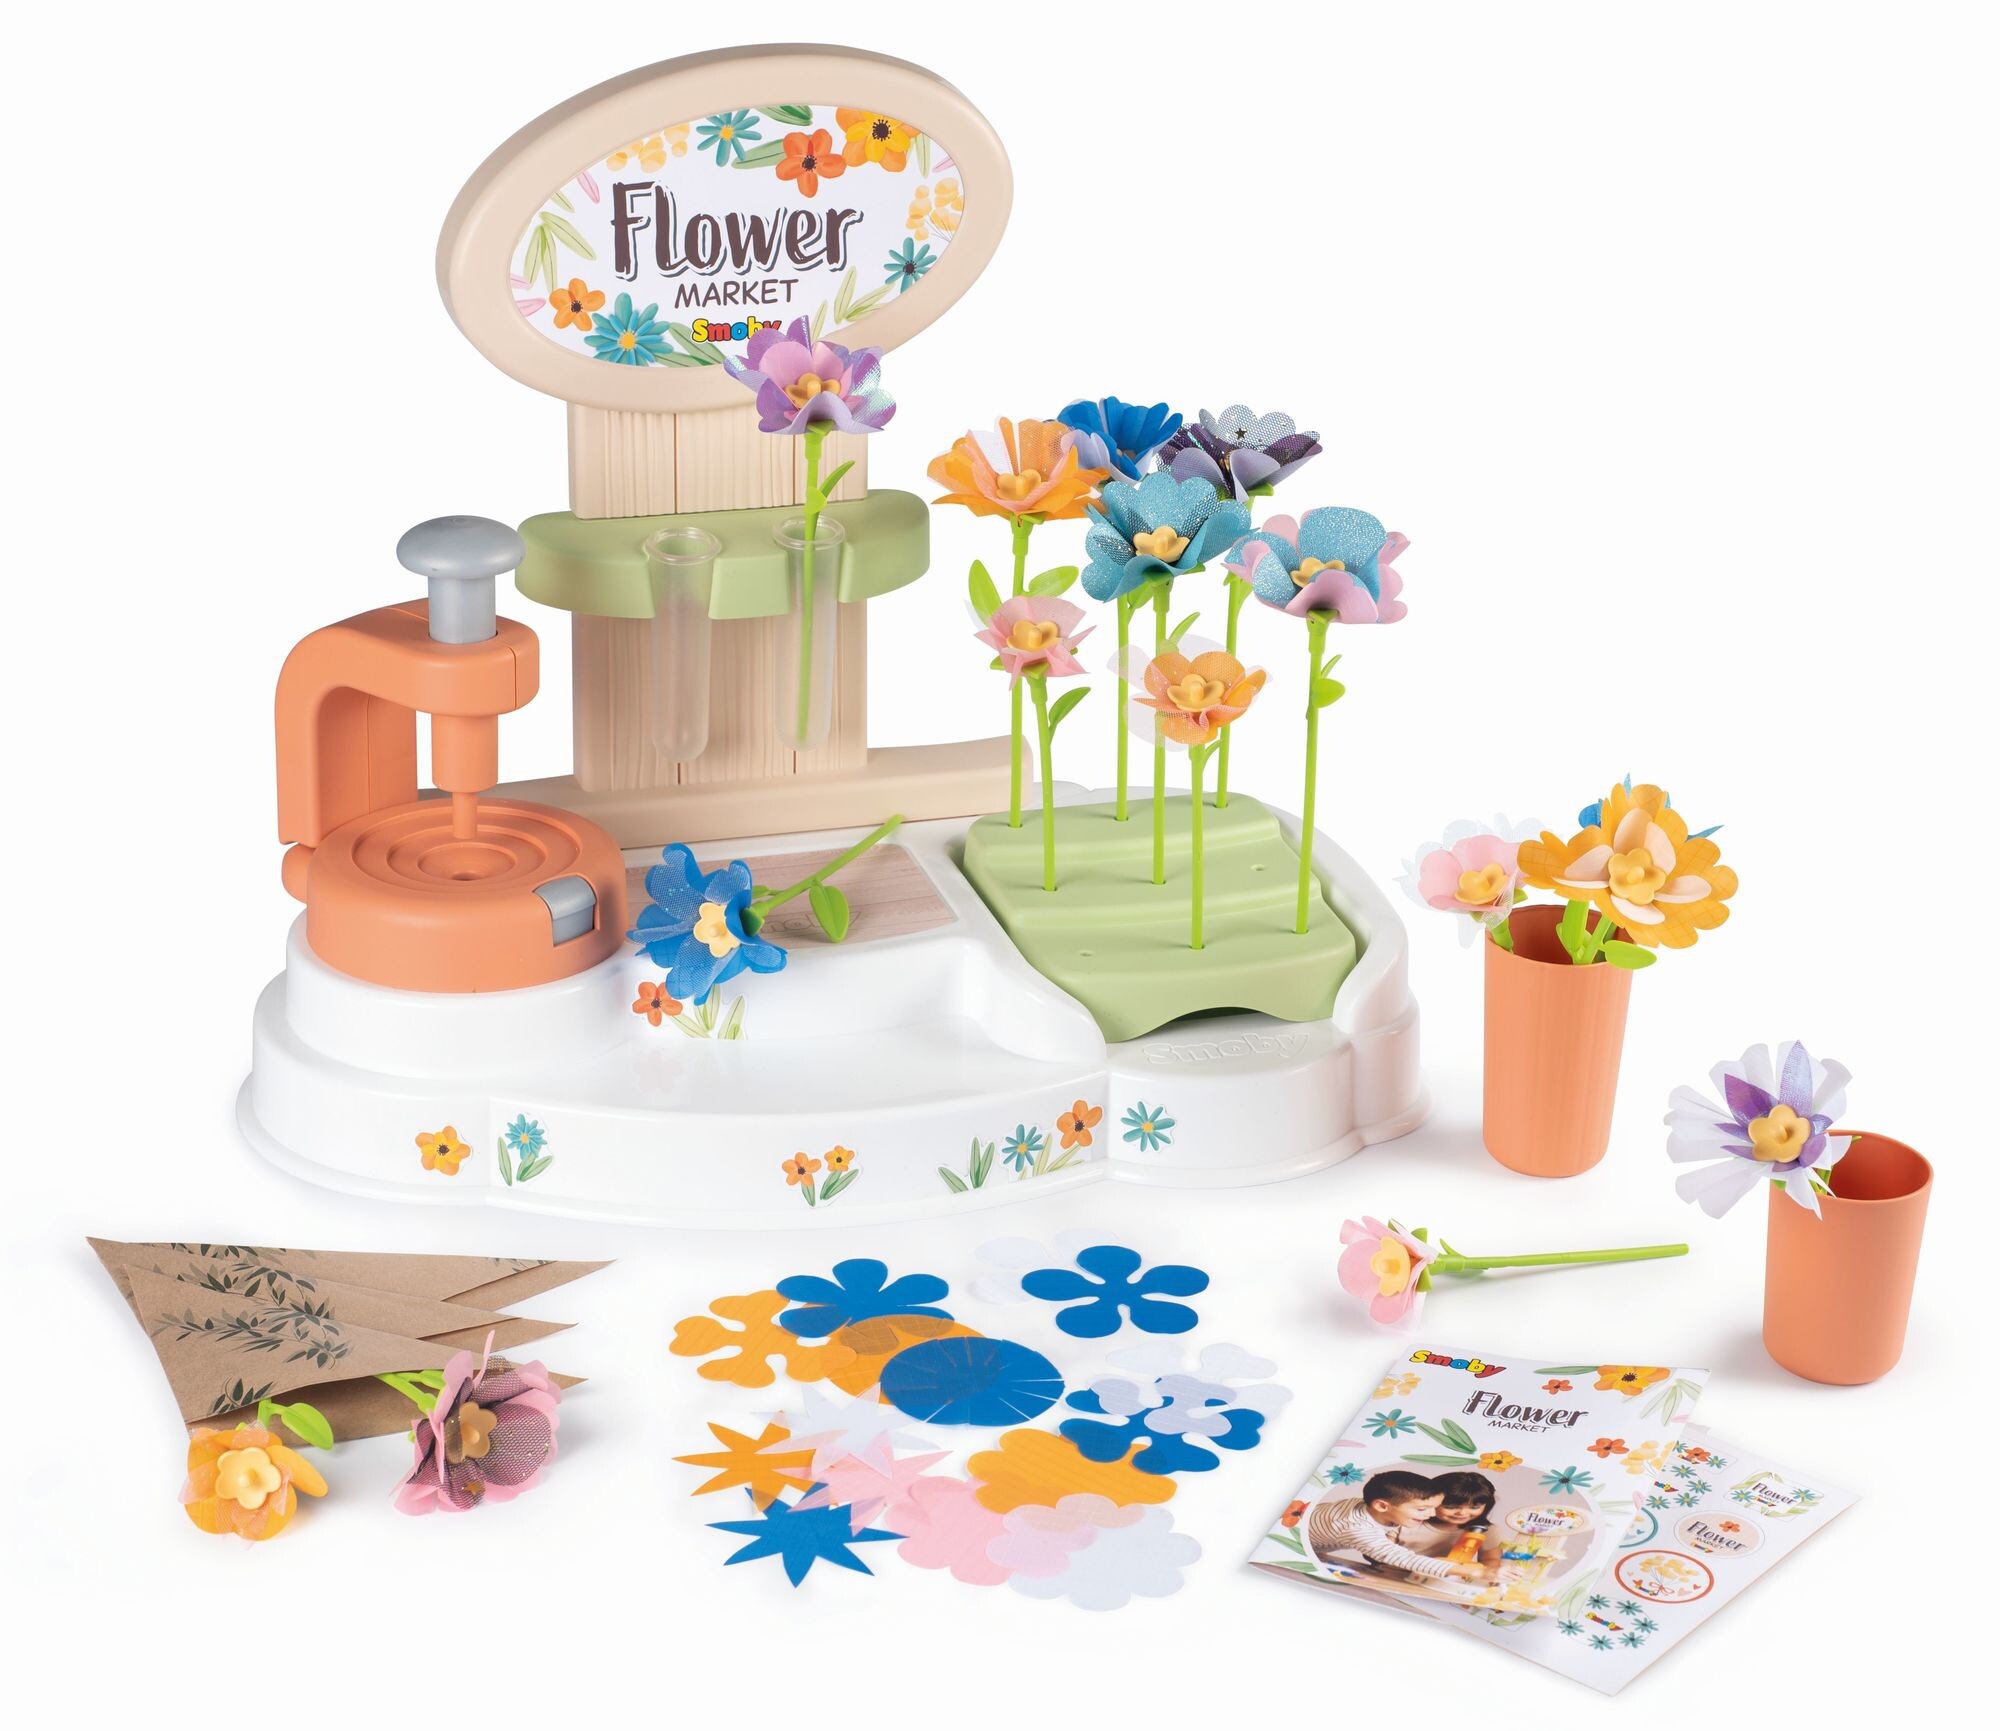 Flower market laboratorio dei fiori, +3 anni, crea i tuoi fiori, 104 accessori, made in france - SMOBY